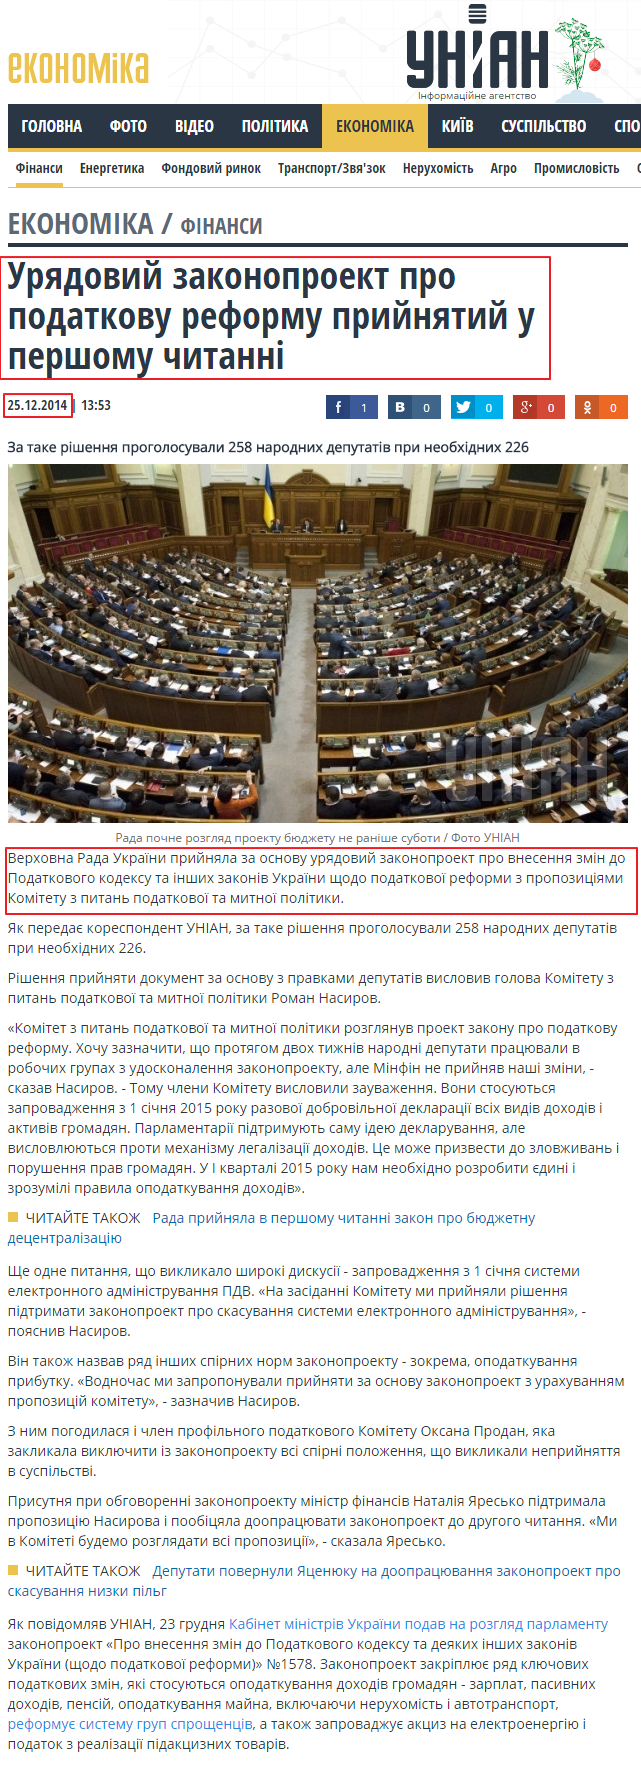 http://economics.unian.ua/finance/1026110-uryadoviy-zakonoproekt-pro-podatkovu-reformu-priynyatiy-u-pershomu-chitanni.html